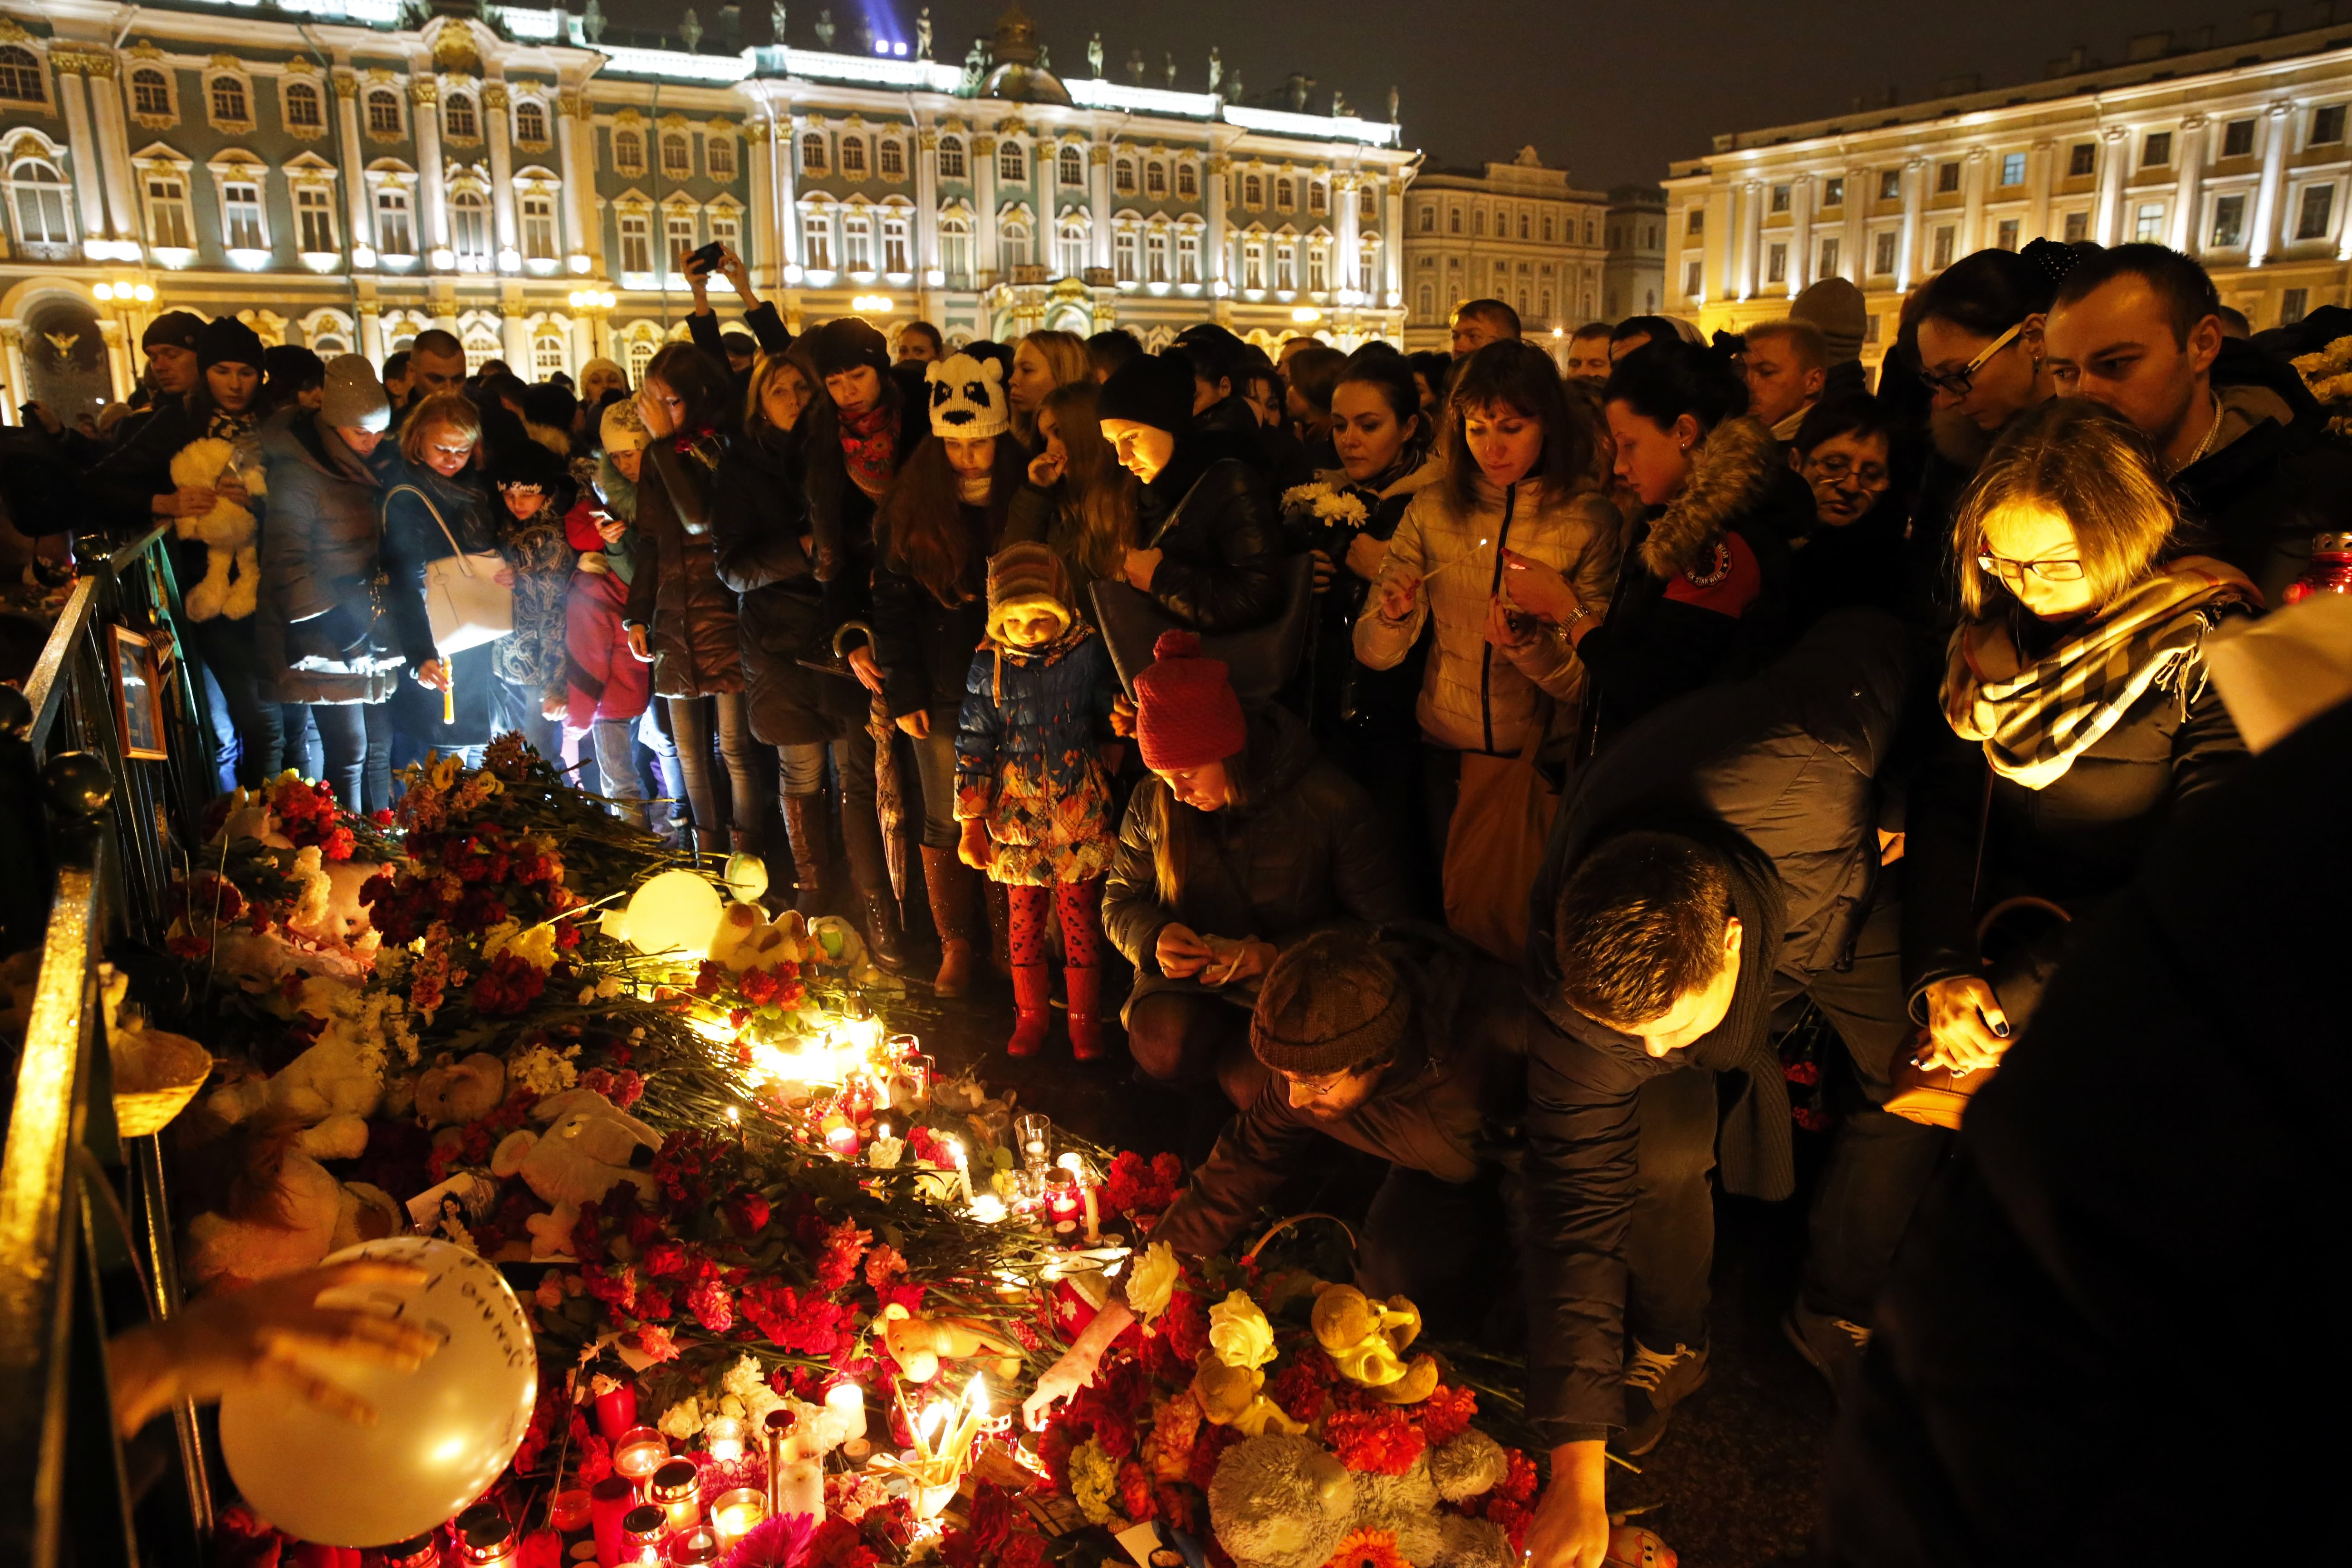 Nach dem tragischen Flugzeugabsturz in Ägypten mit 224 Todesopfern wurde der 1. November in Russland zum nationalen Trauertag erklärt. Menschen kamen mit Blumen und Kerzen auf den Dwortsowaja-Platz in Sankt Petersburg. 